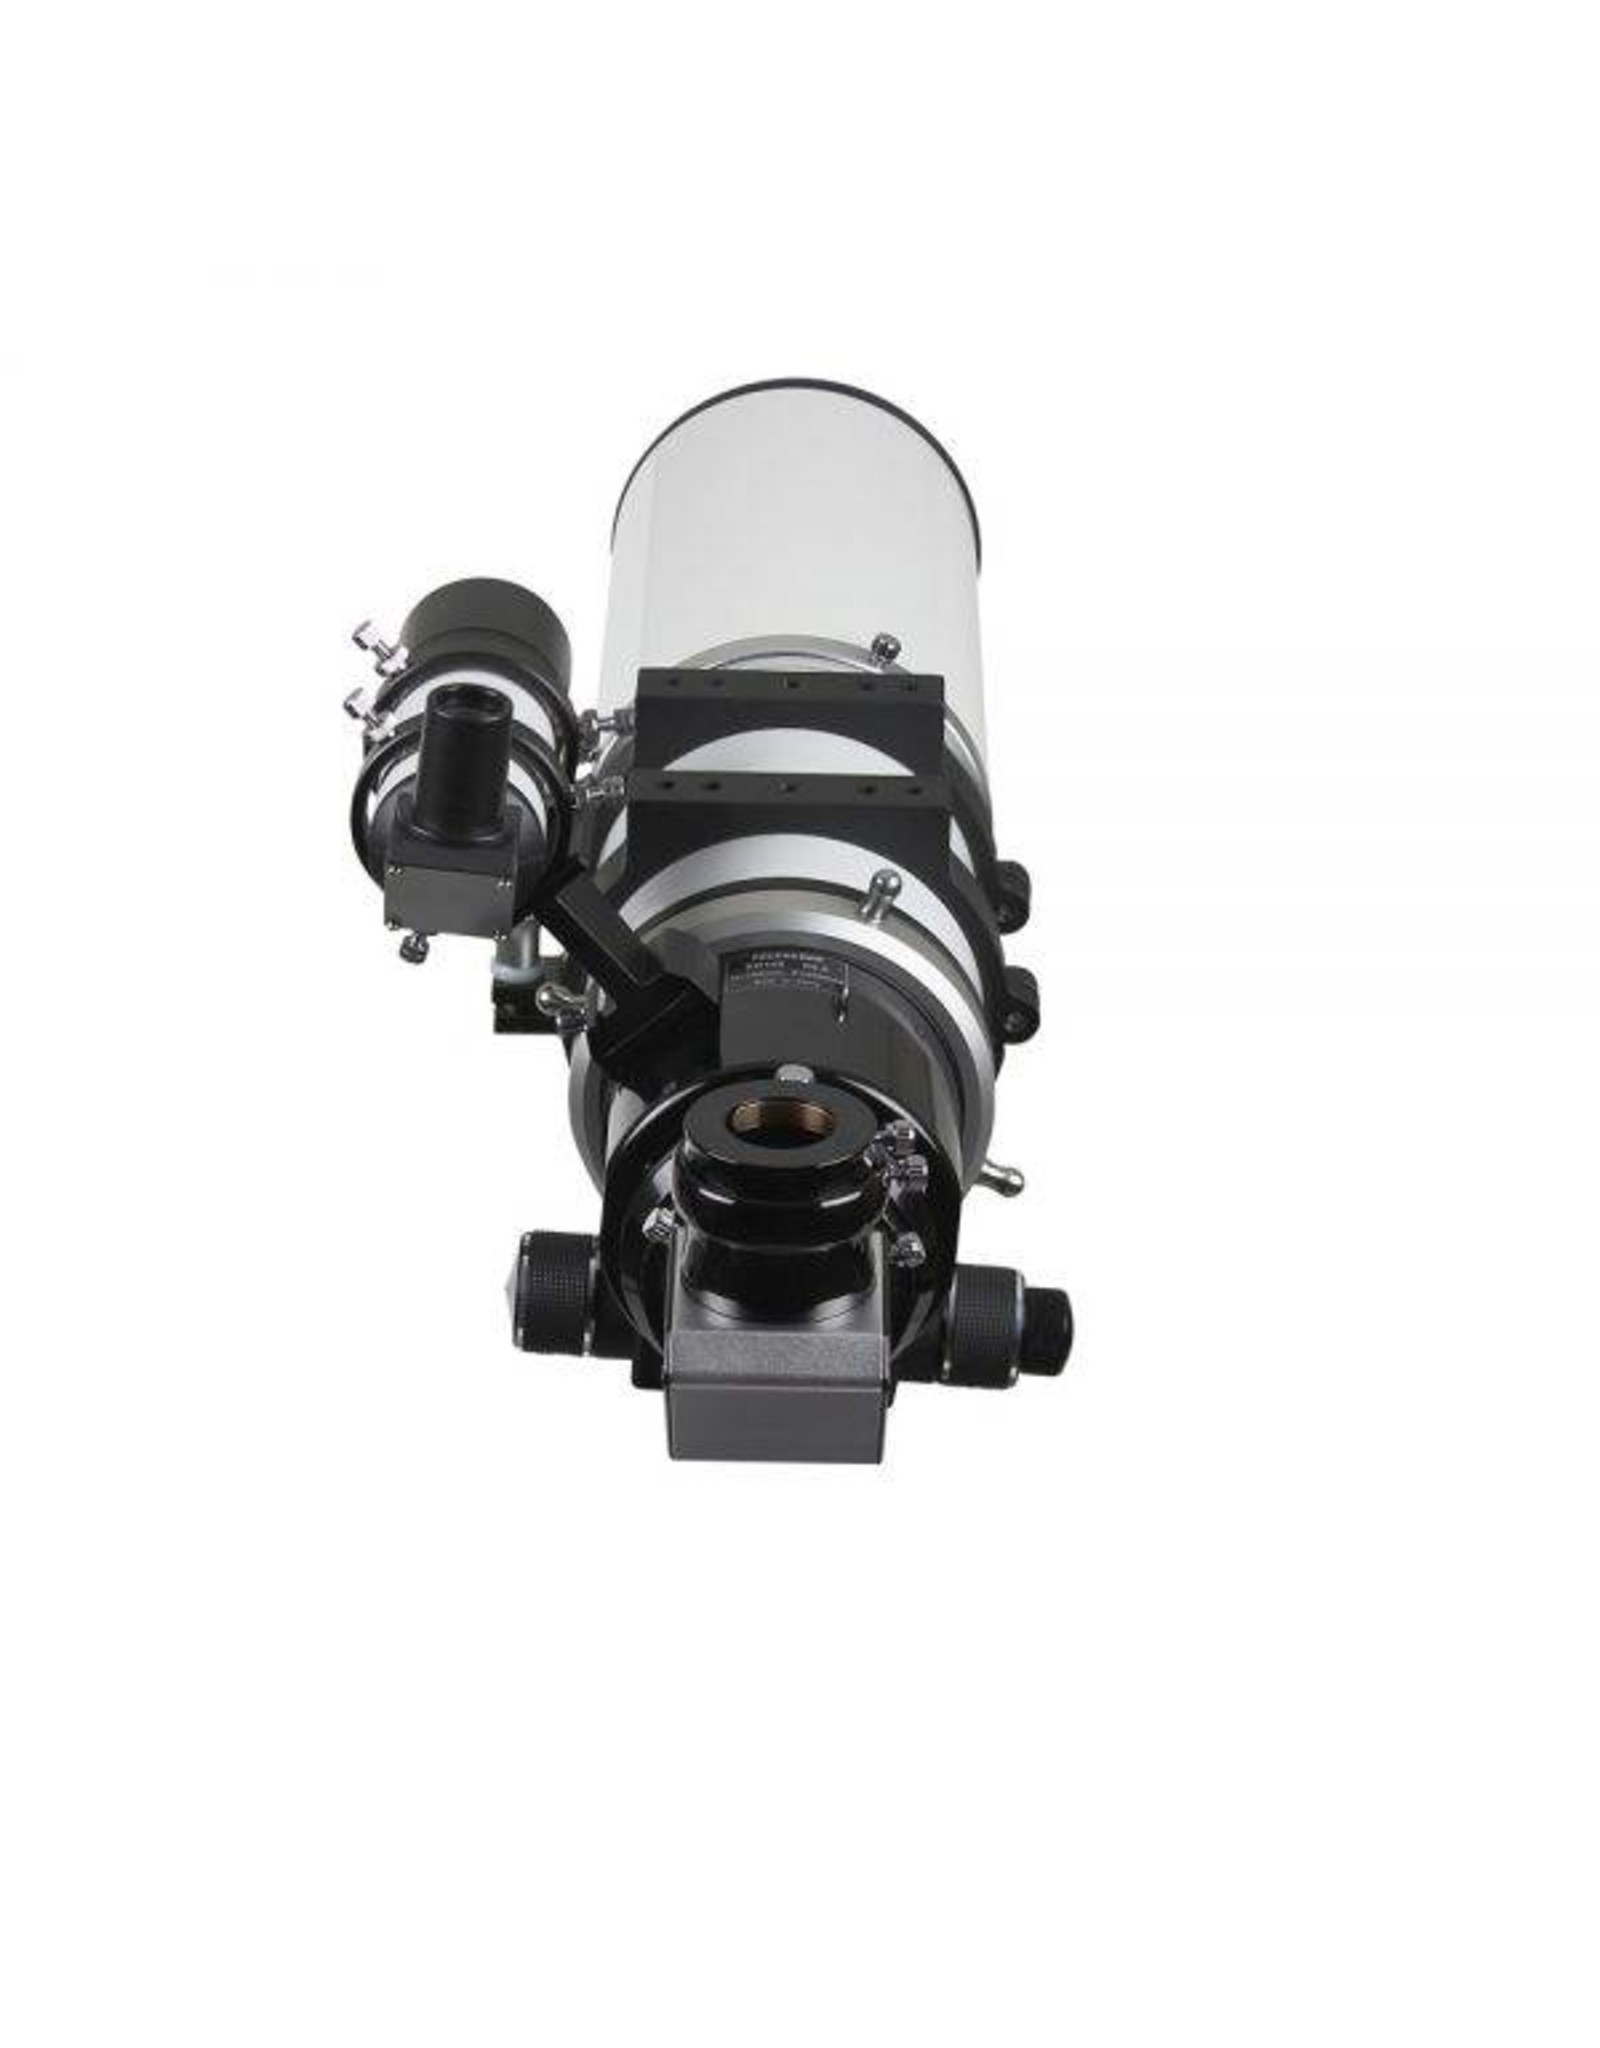 Sky-Watcher Sky-Watcher Esprit 100mm ED Triplet APO Refractor